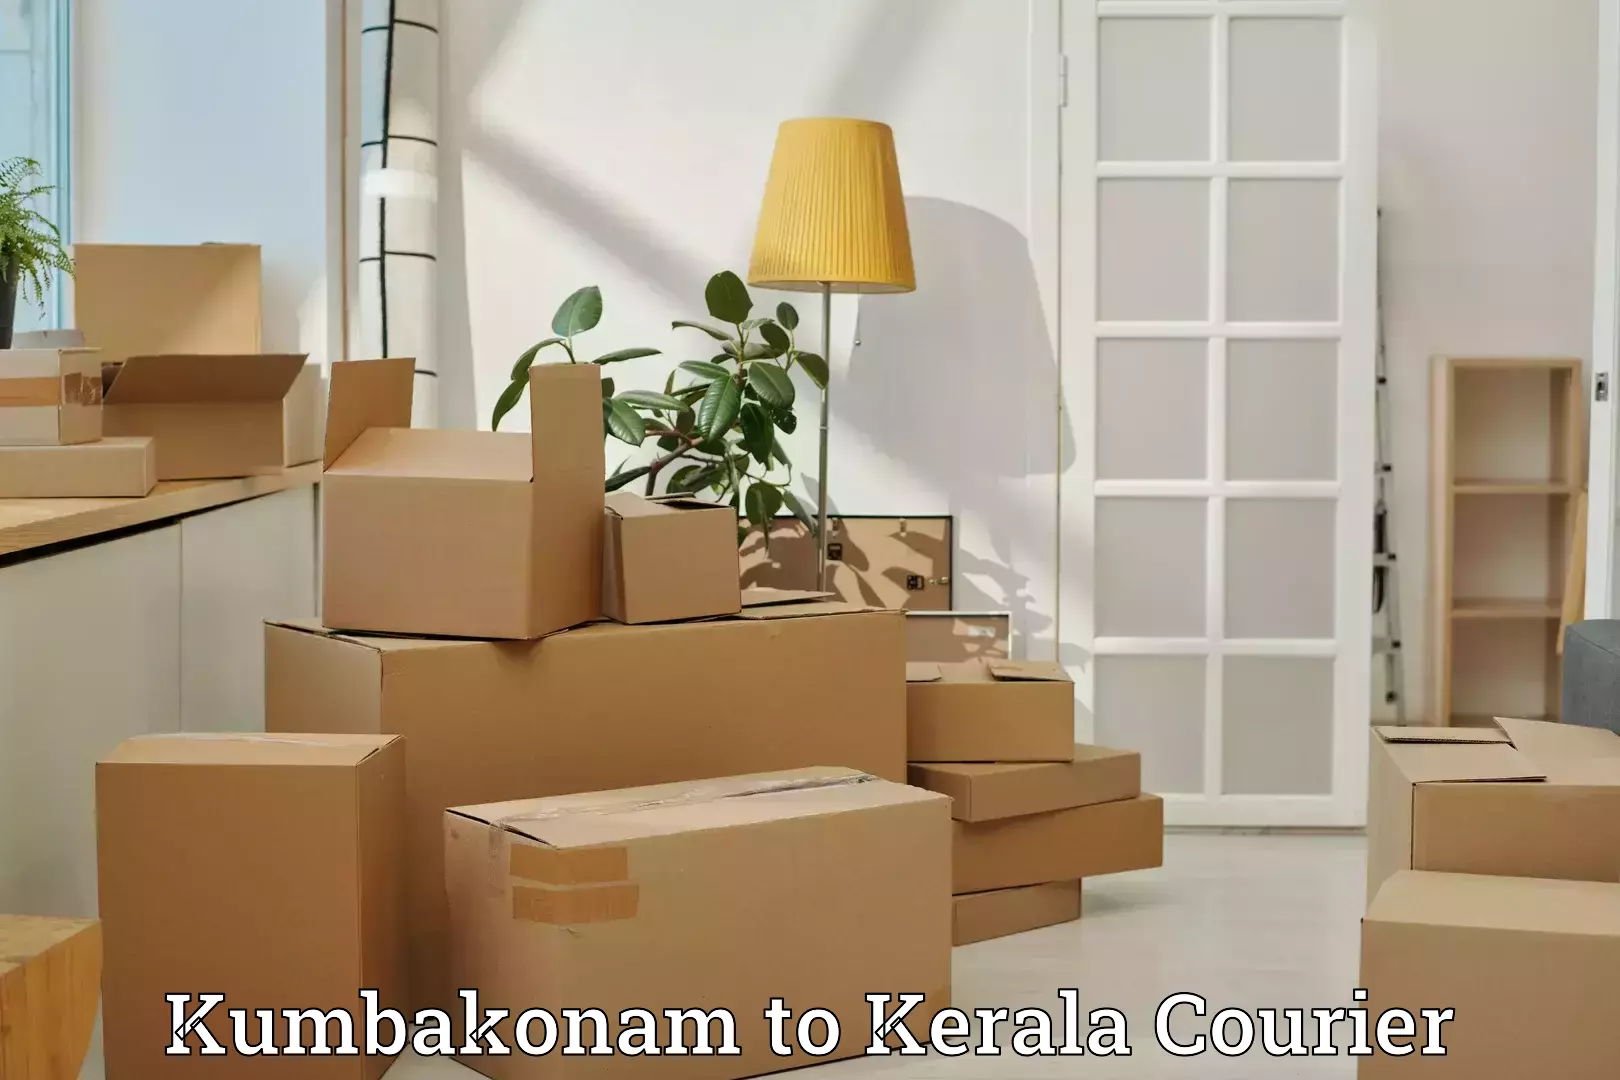 Luggage delivery network Kumbakonam to Mahatma Gandhi University Kottayam